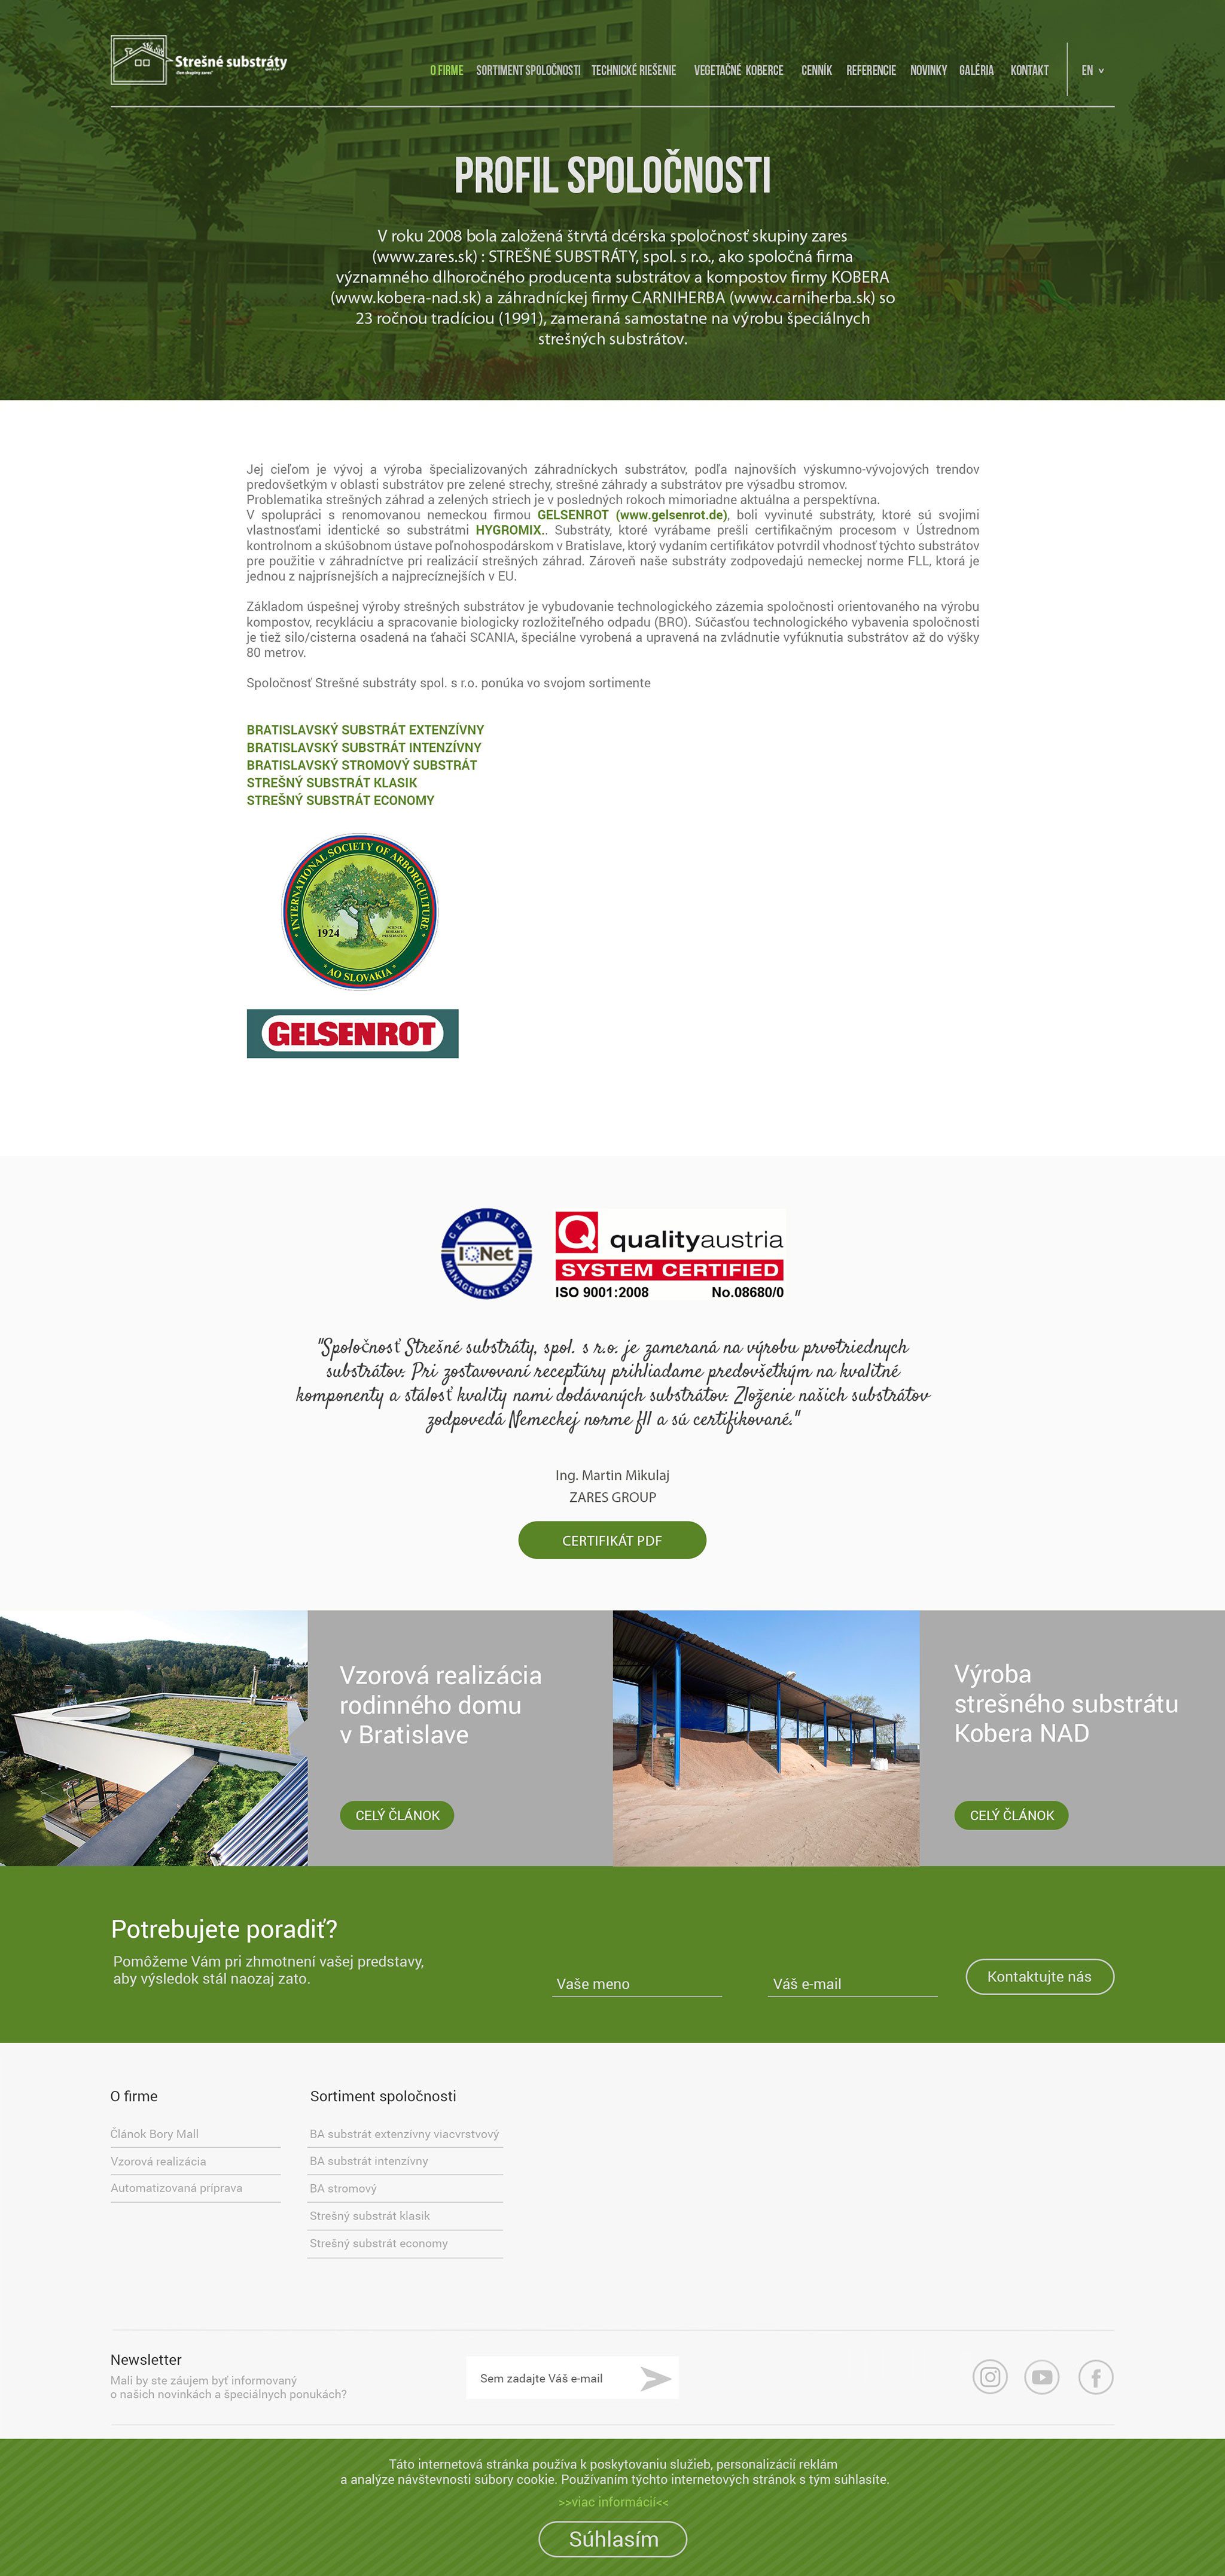 Образование веб-сайтов - Подложки крыши - Профиль Компании